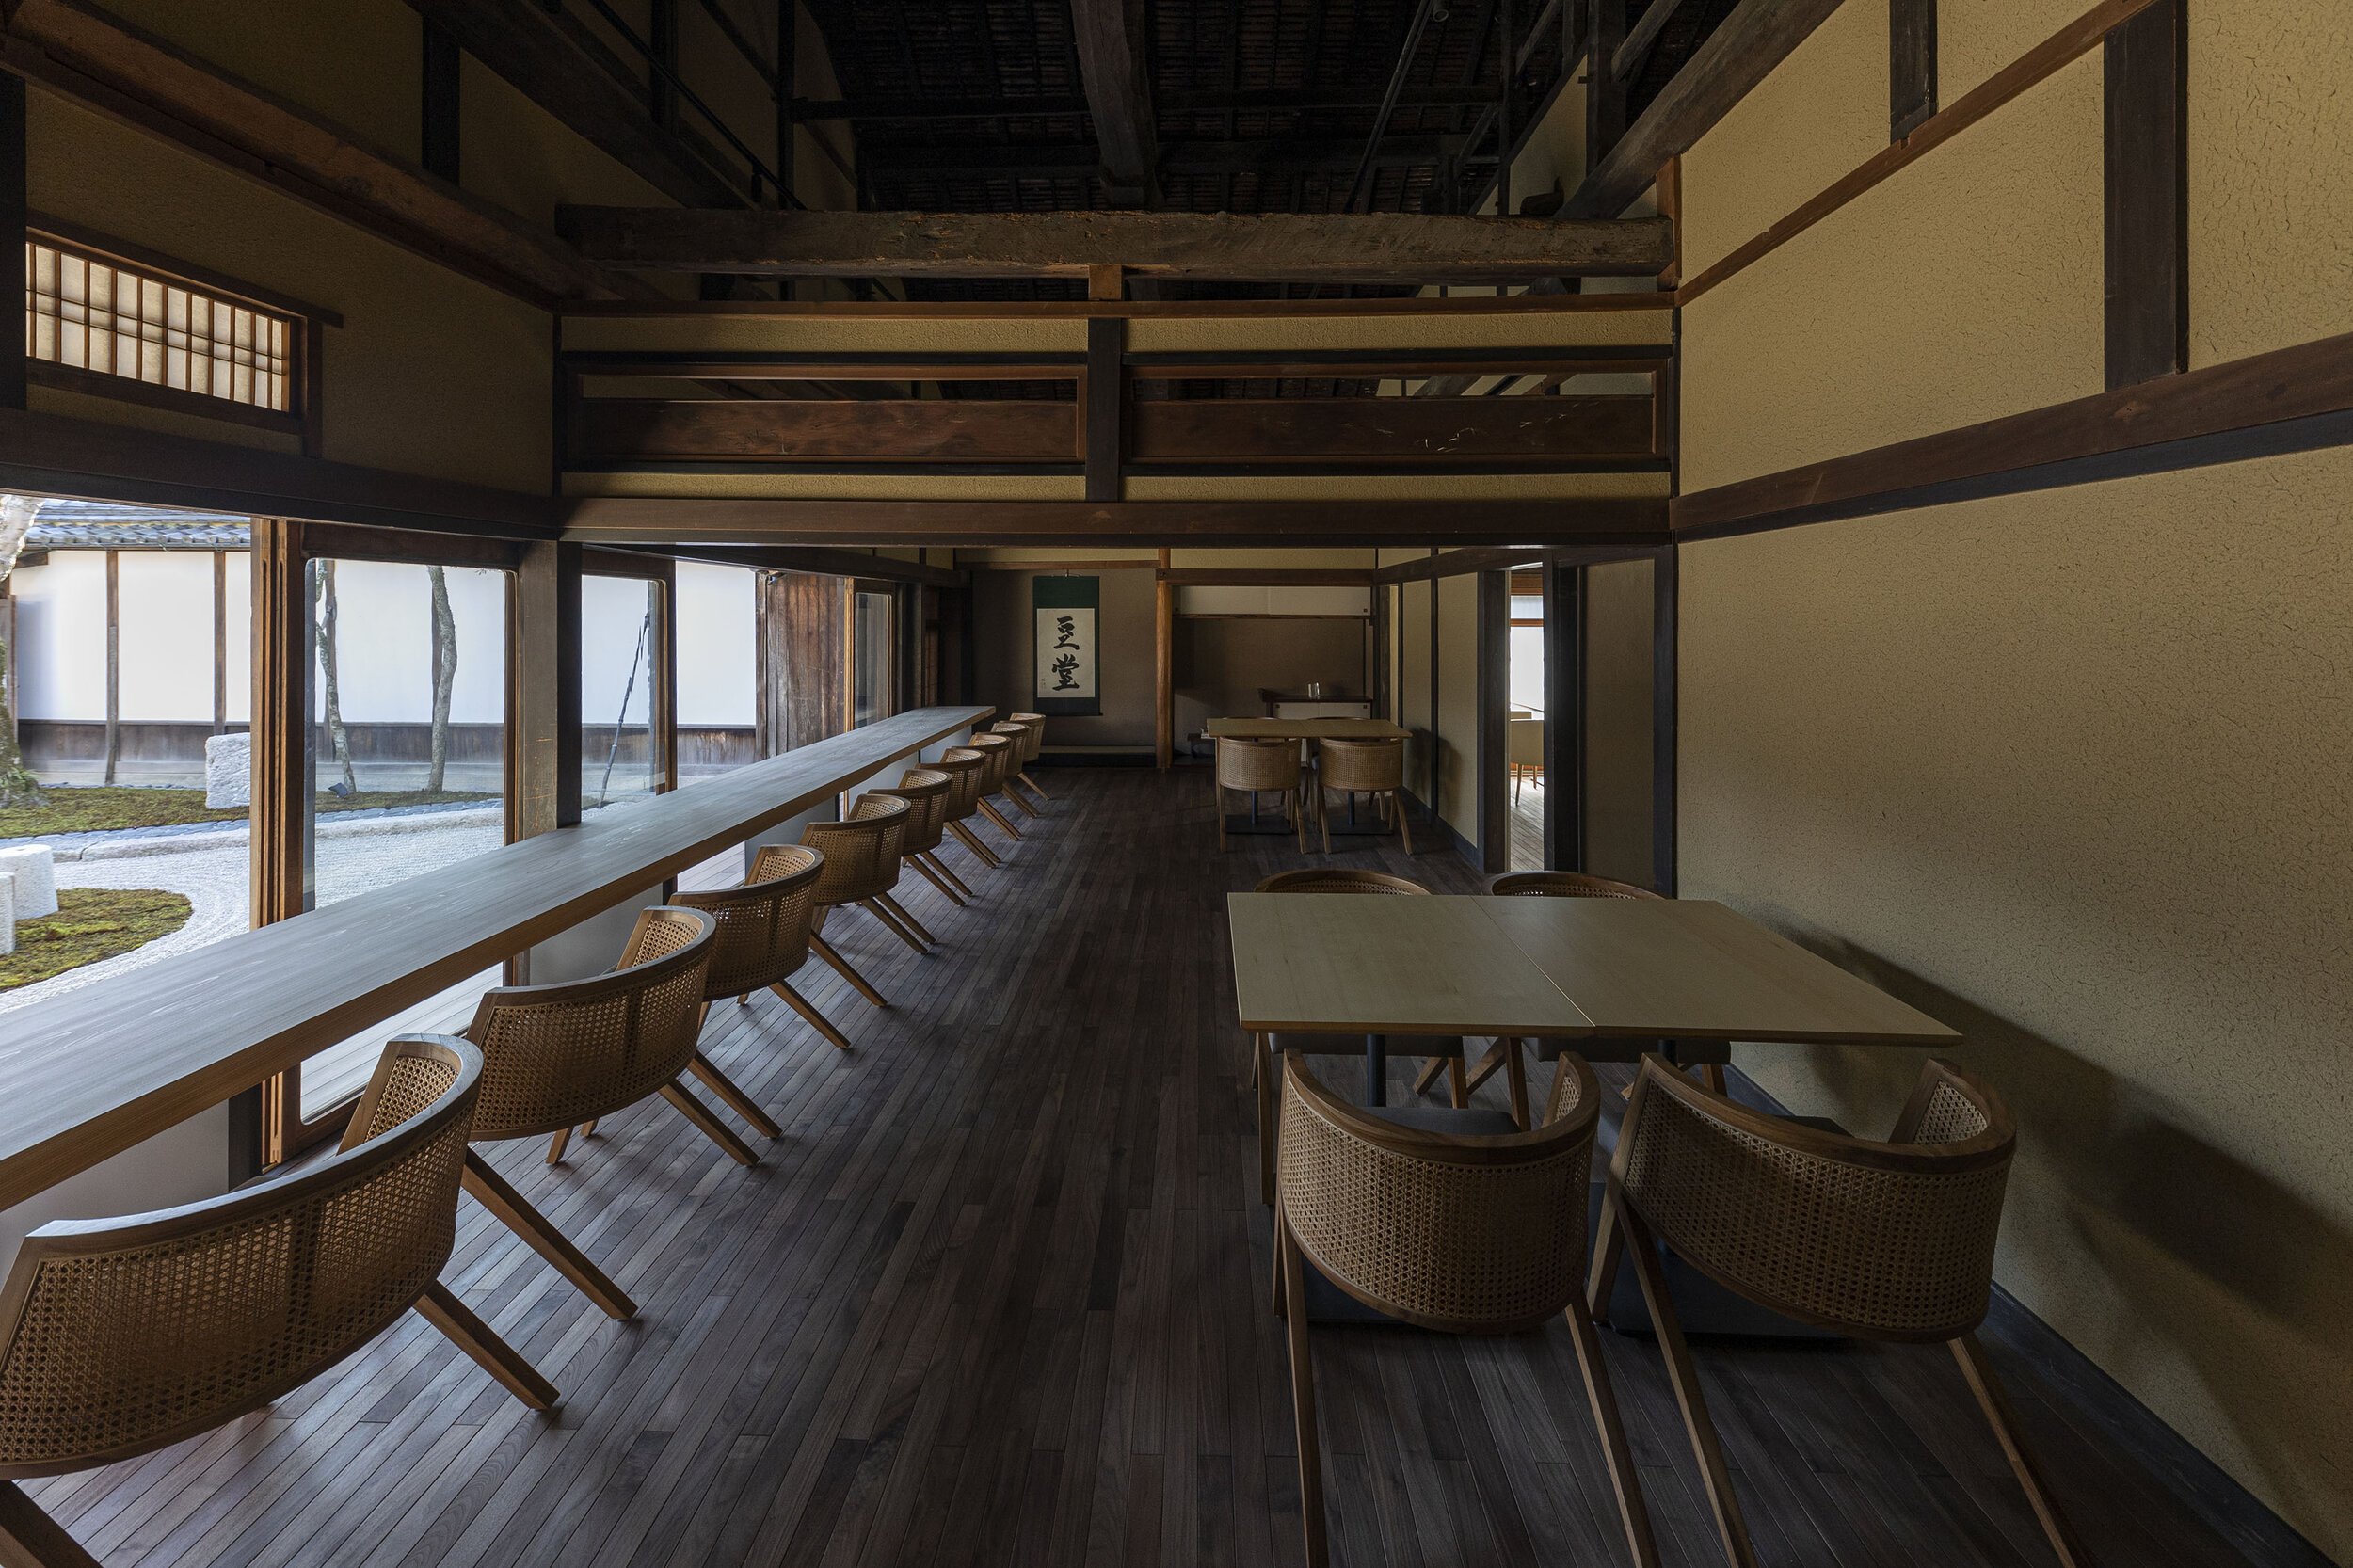  杉本博司と榊田倫之が率いる新素材研究所がデザインを手掛けた小田垣商店本店のカフェ 豆堂 